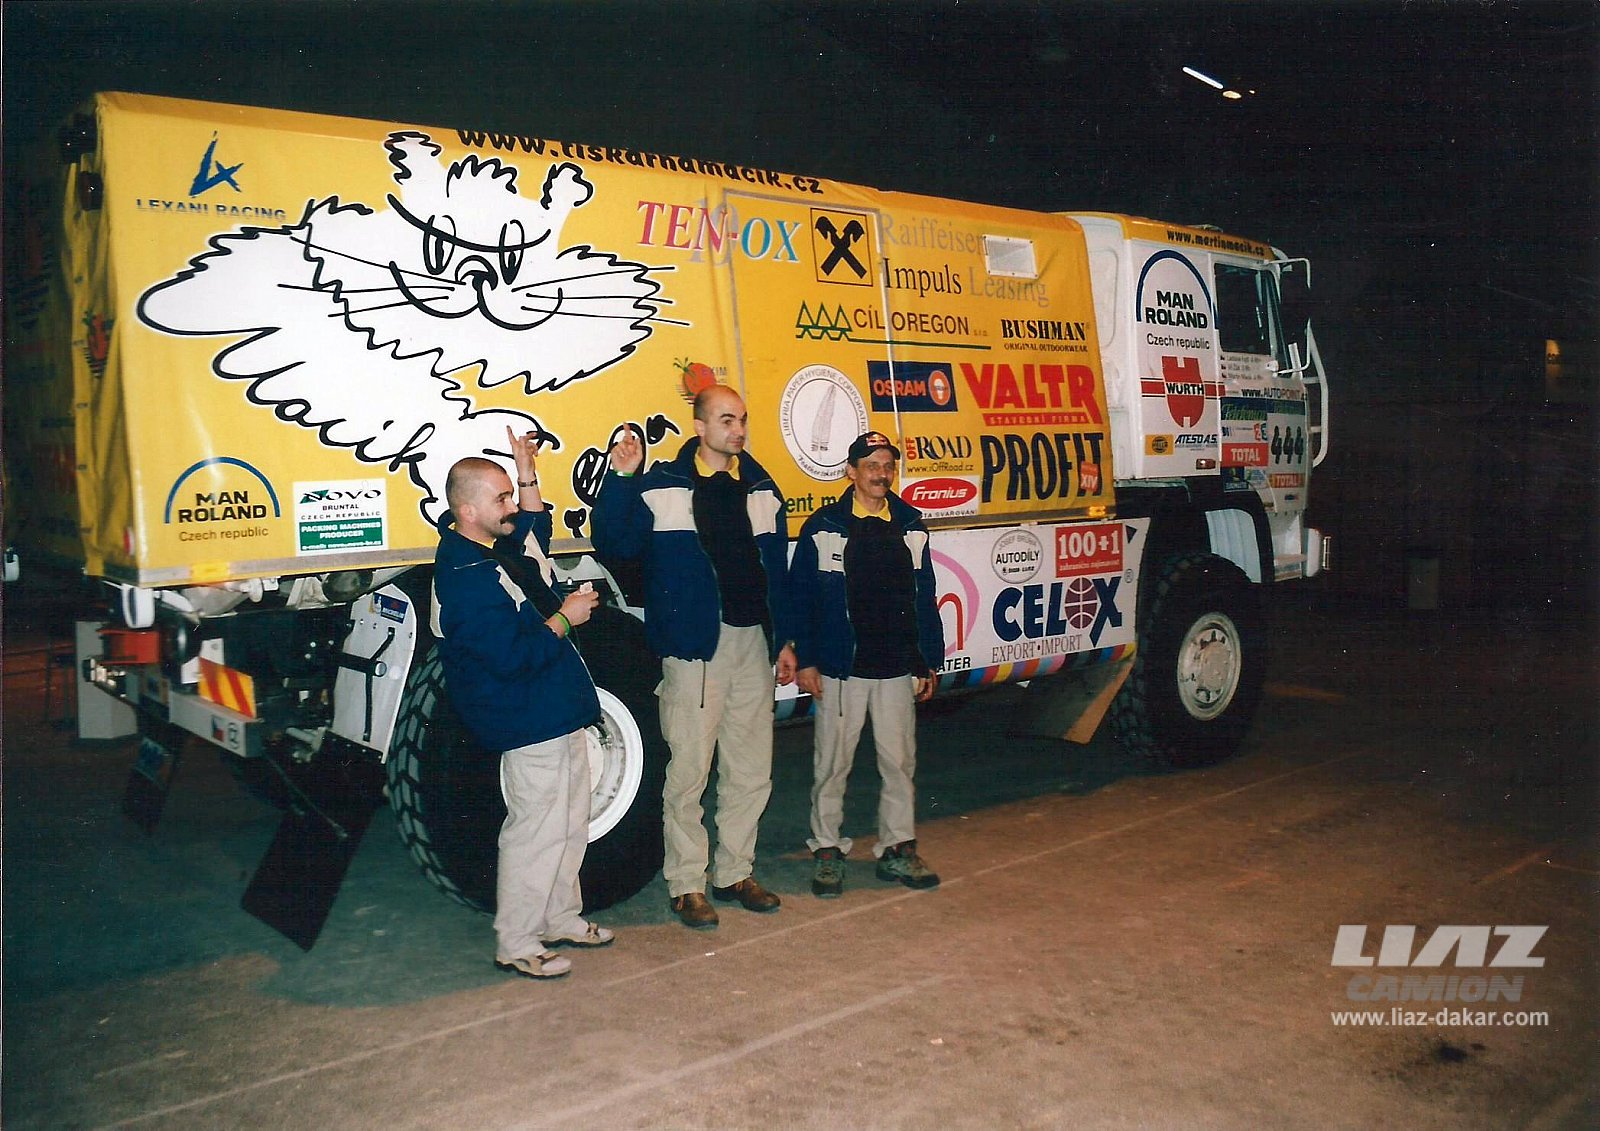 LIAZ Dakar 2003